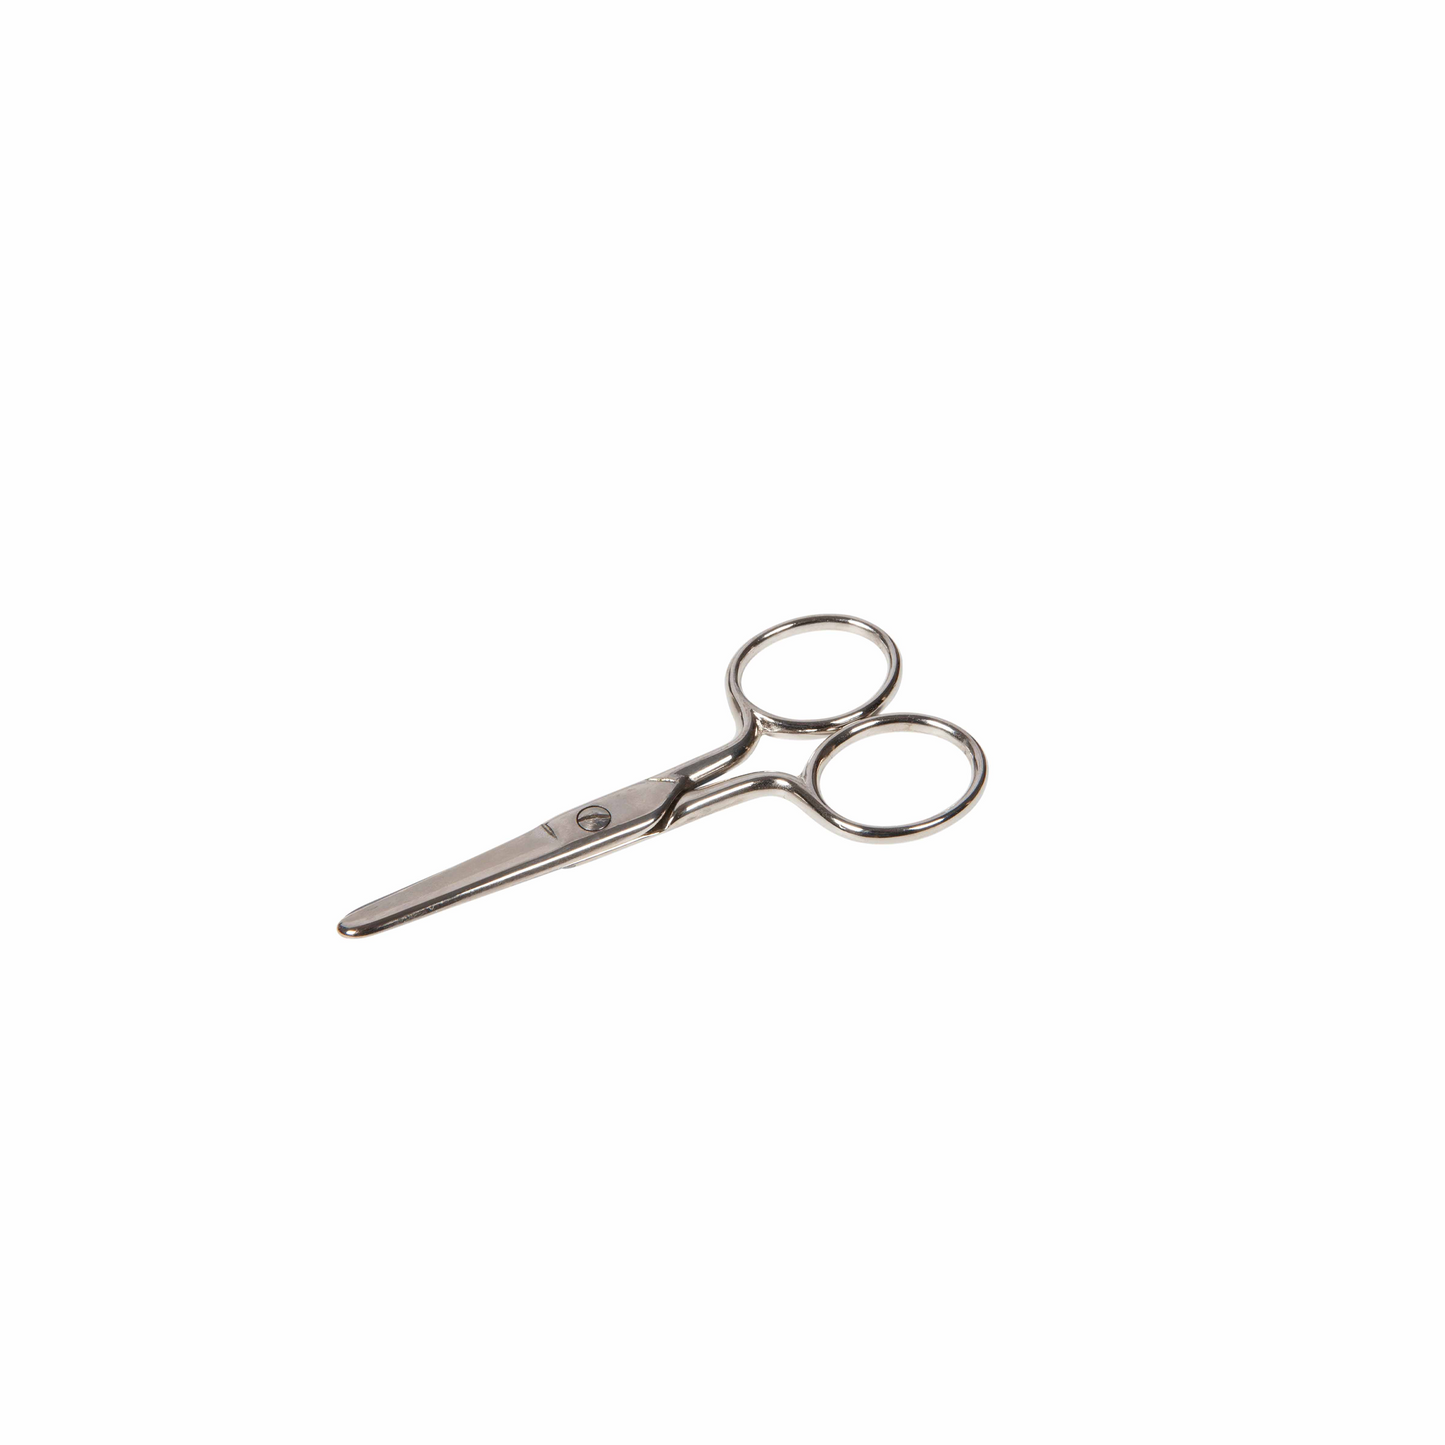 Children's scissors 9 cm - Nienhuis AMI